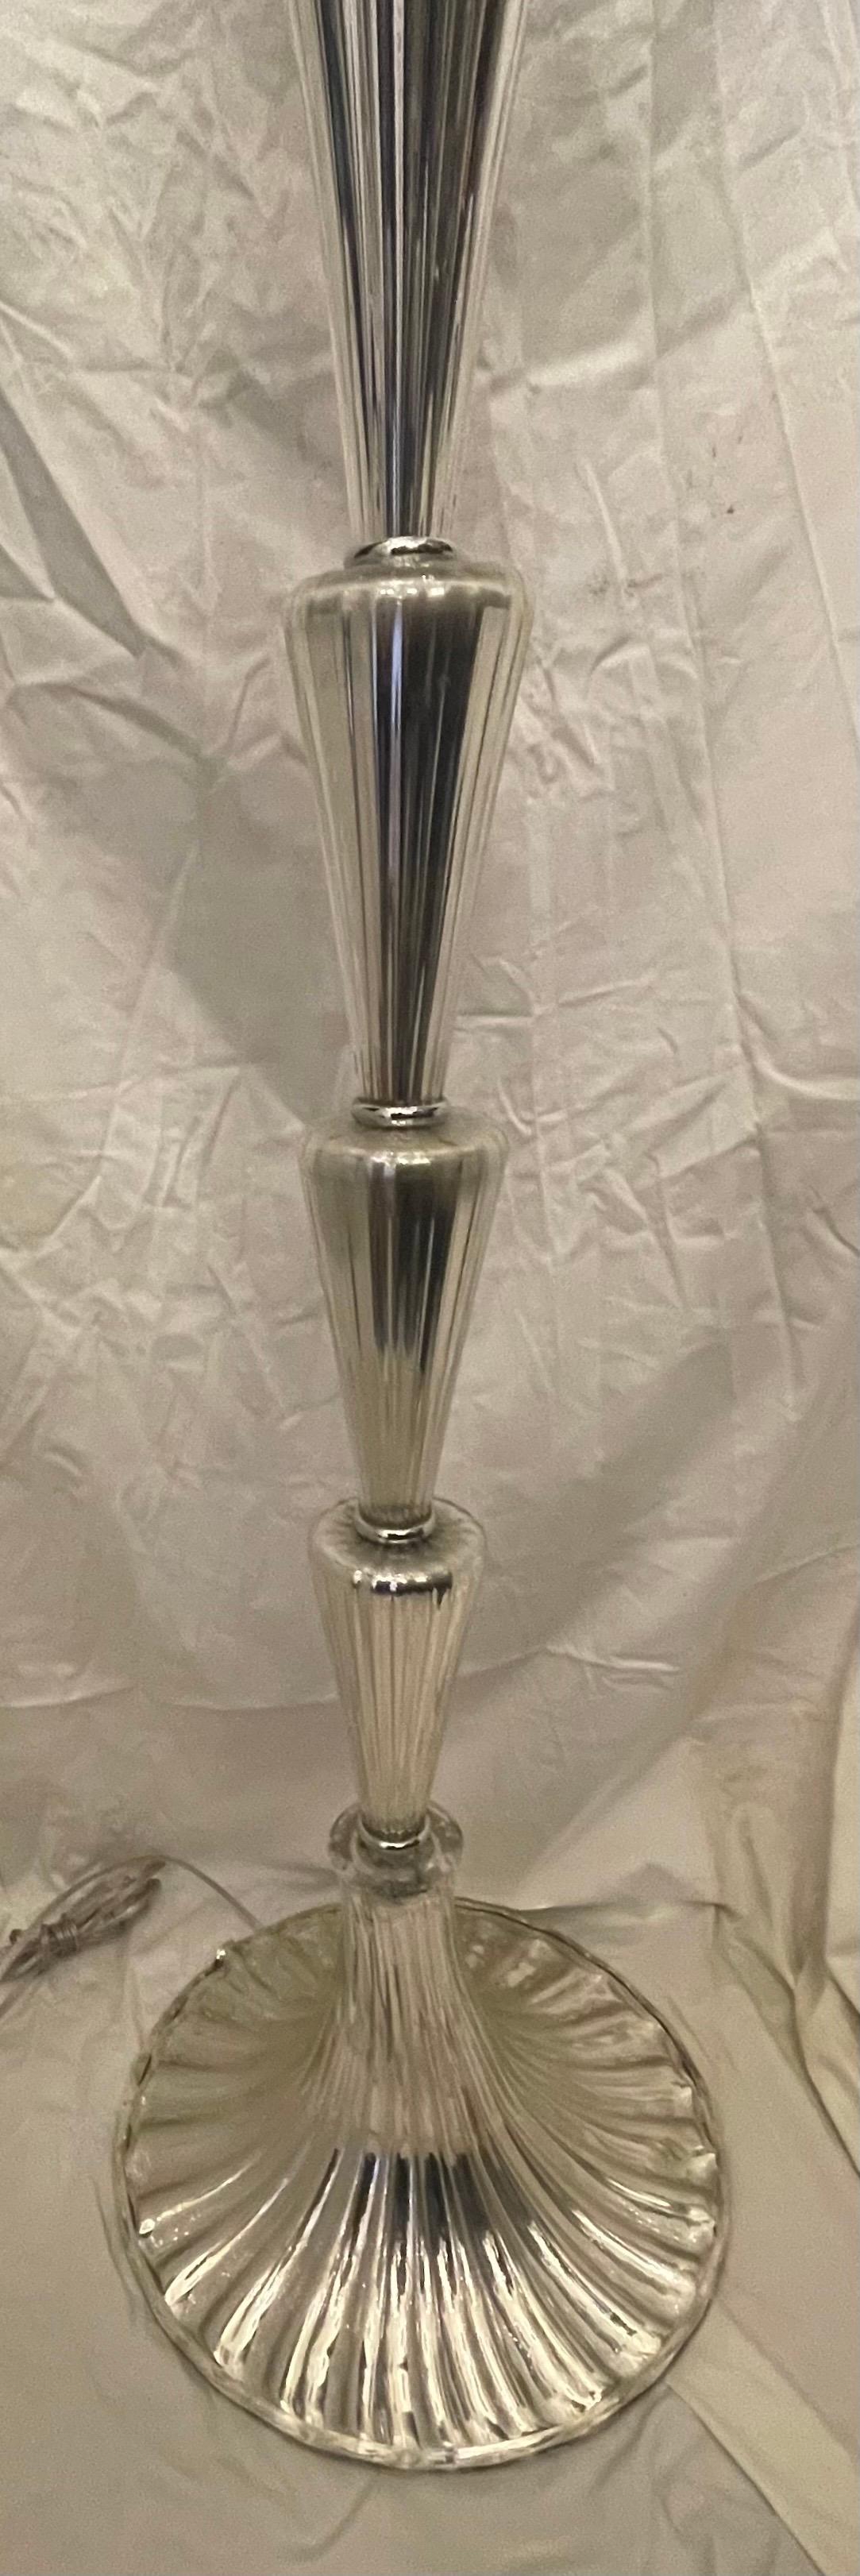 Merveilleux lampadaire en verre argenté vénitien Murano de Lorin Marsh, datant du milieu du siècle dernier, entièrement recâblé avec une nouvelle douille Edison à deux lumières en nickel poli.